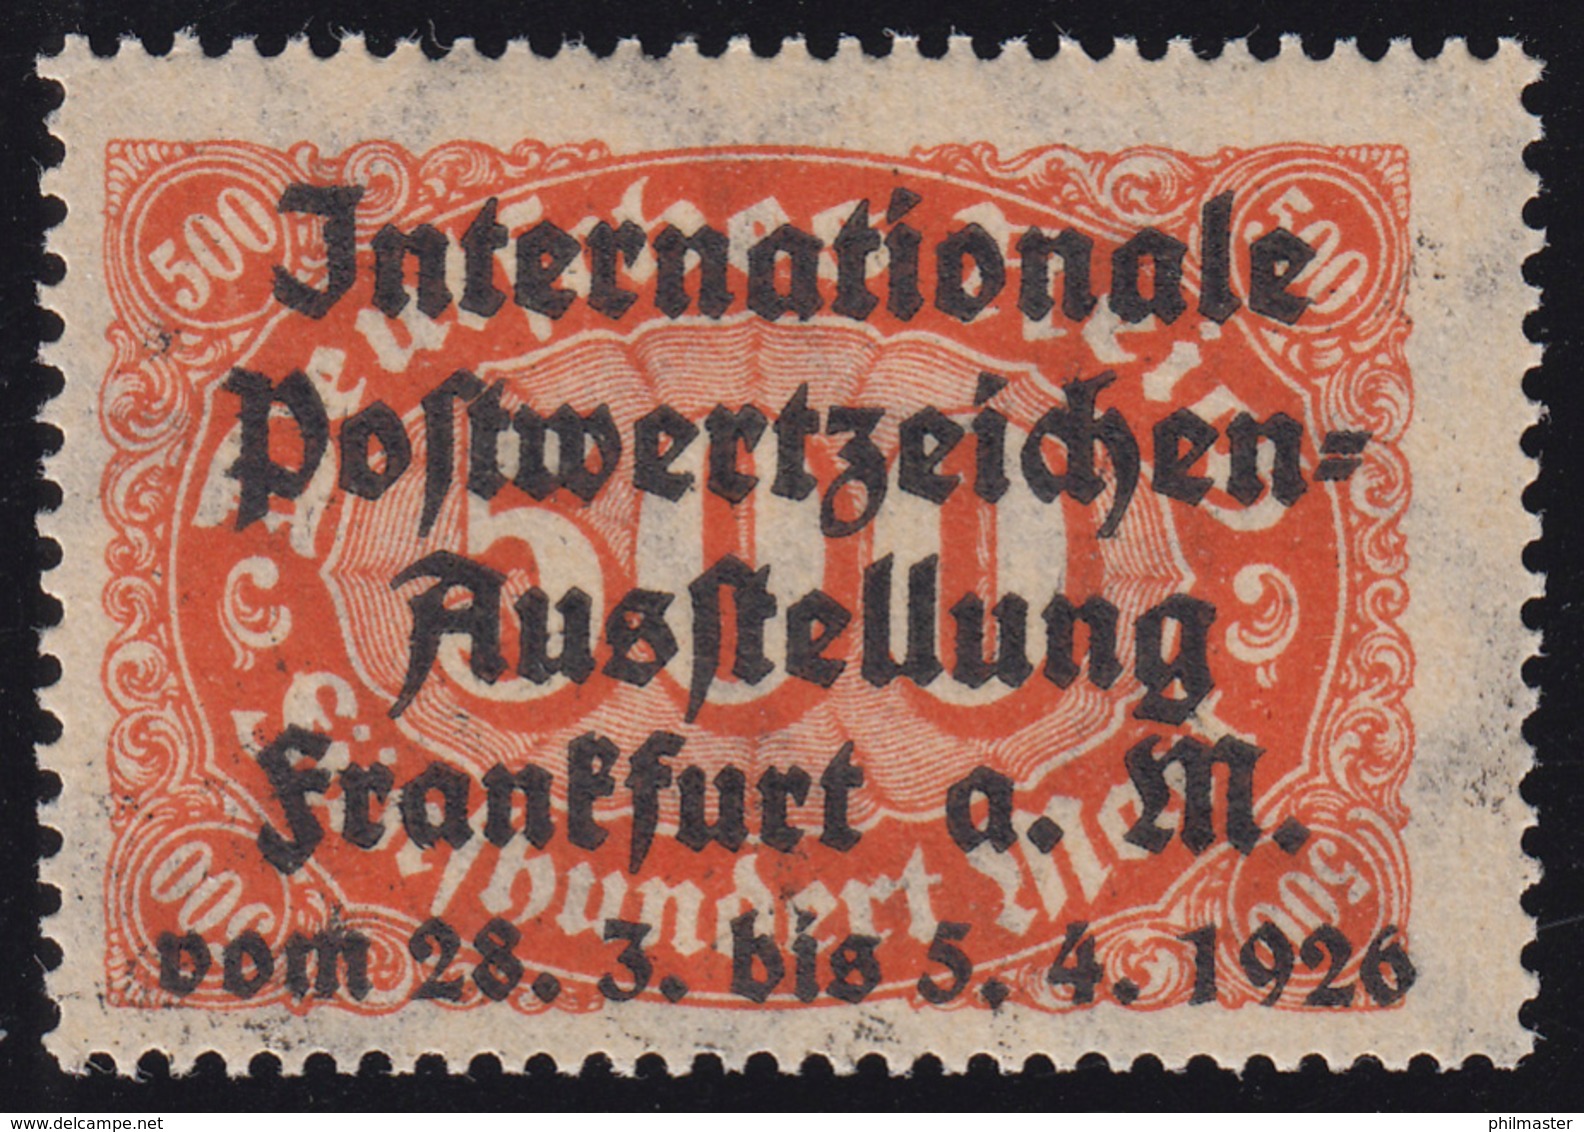 Privater Zudruck Intern. Postwertzeichen-Ausstellung Frankfurt 1926 Auf 251, ** - Briefmarkenausstellungen